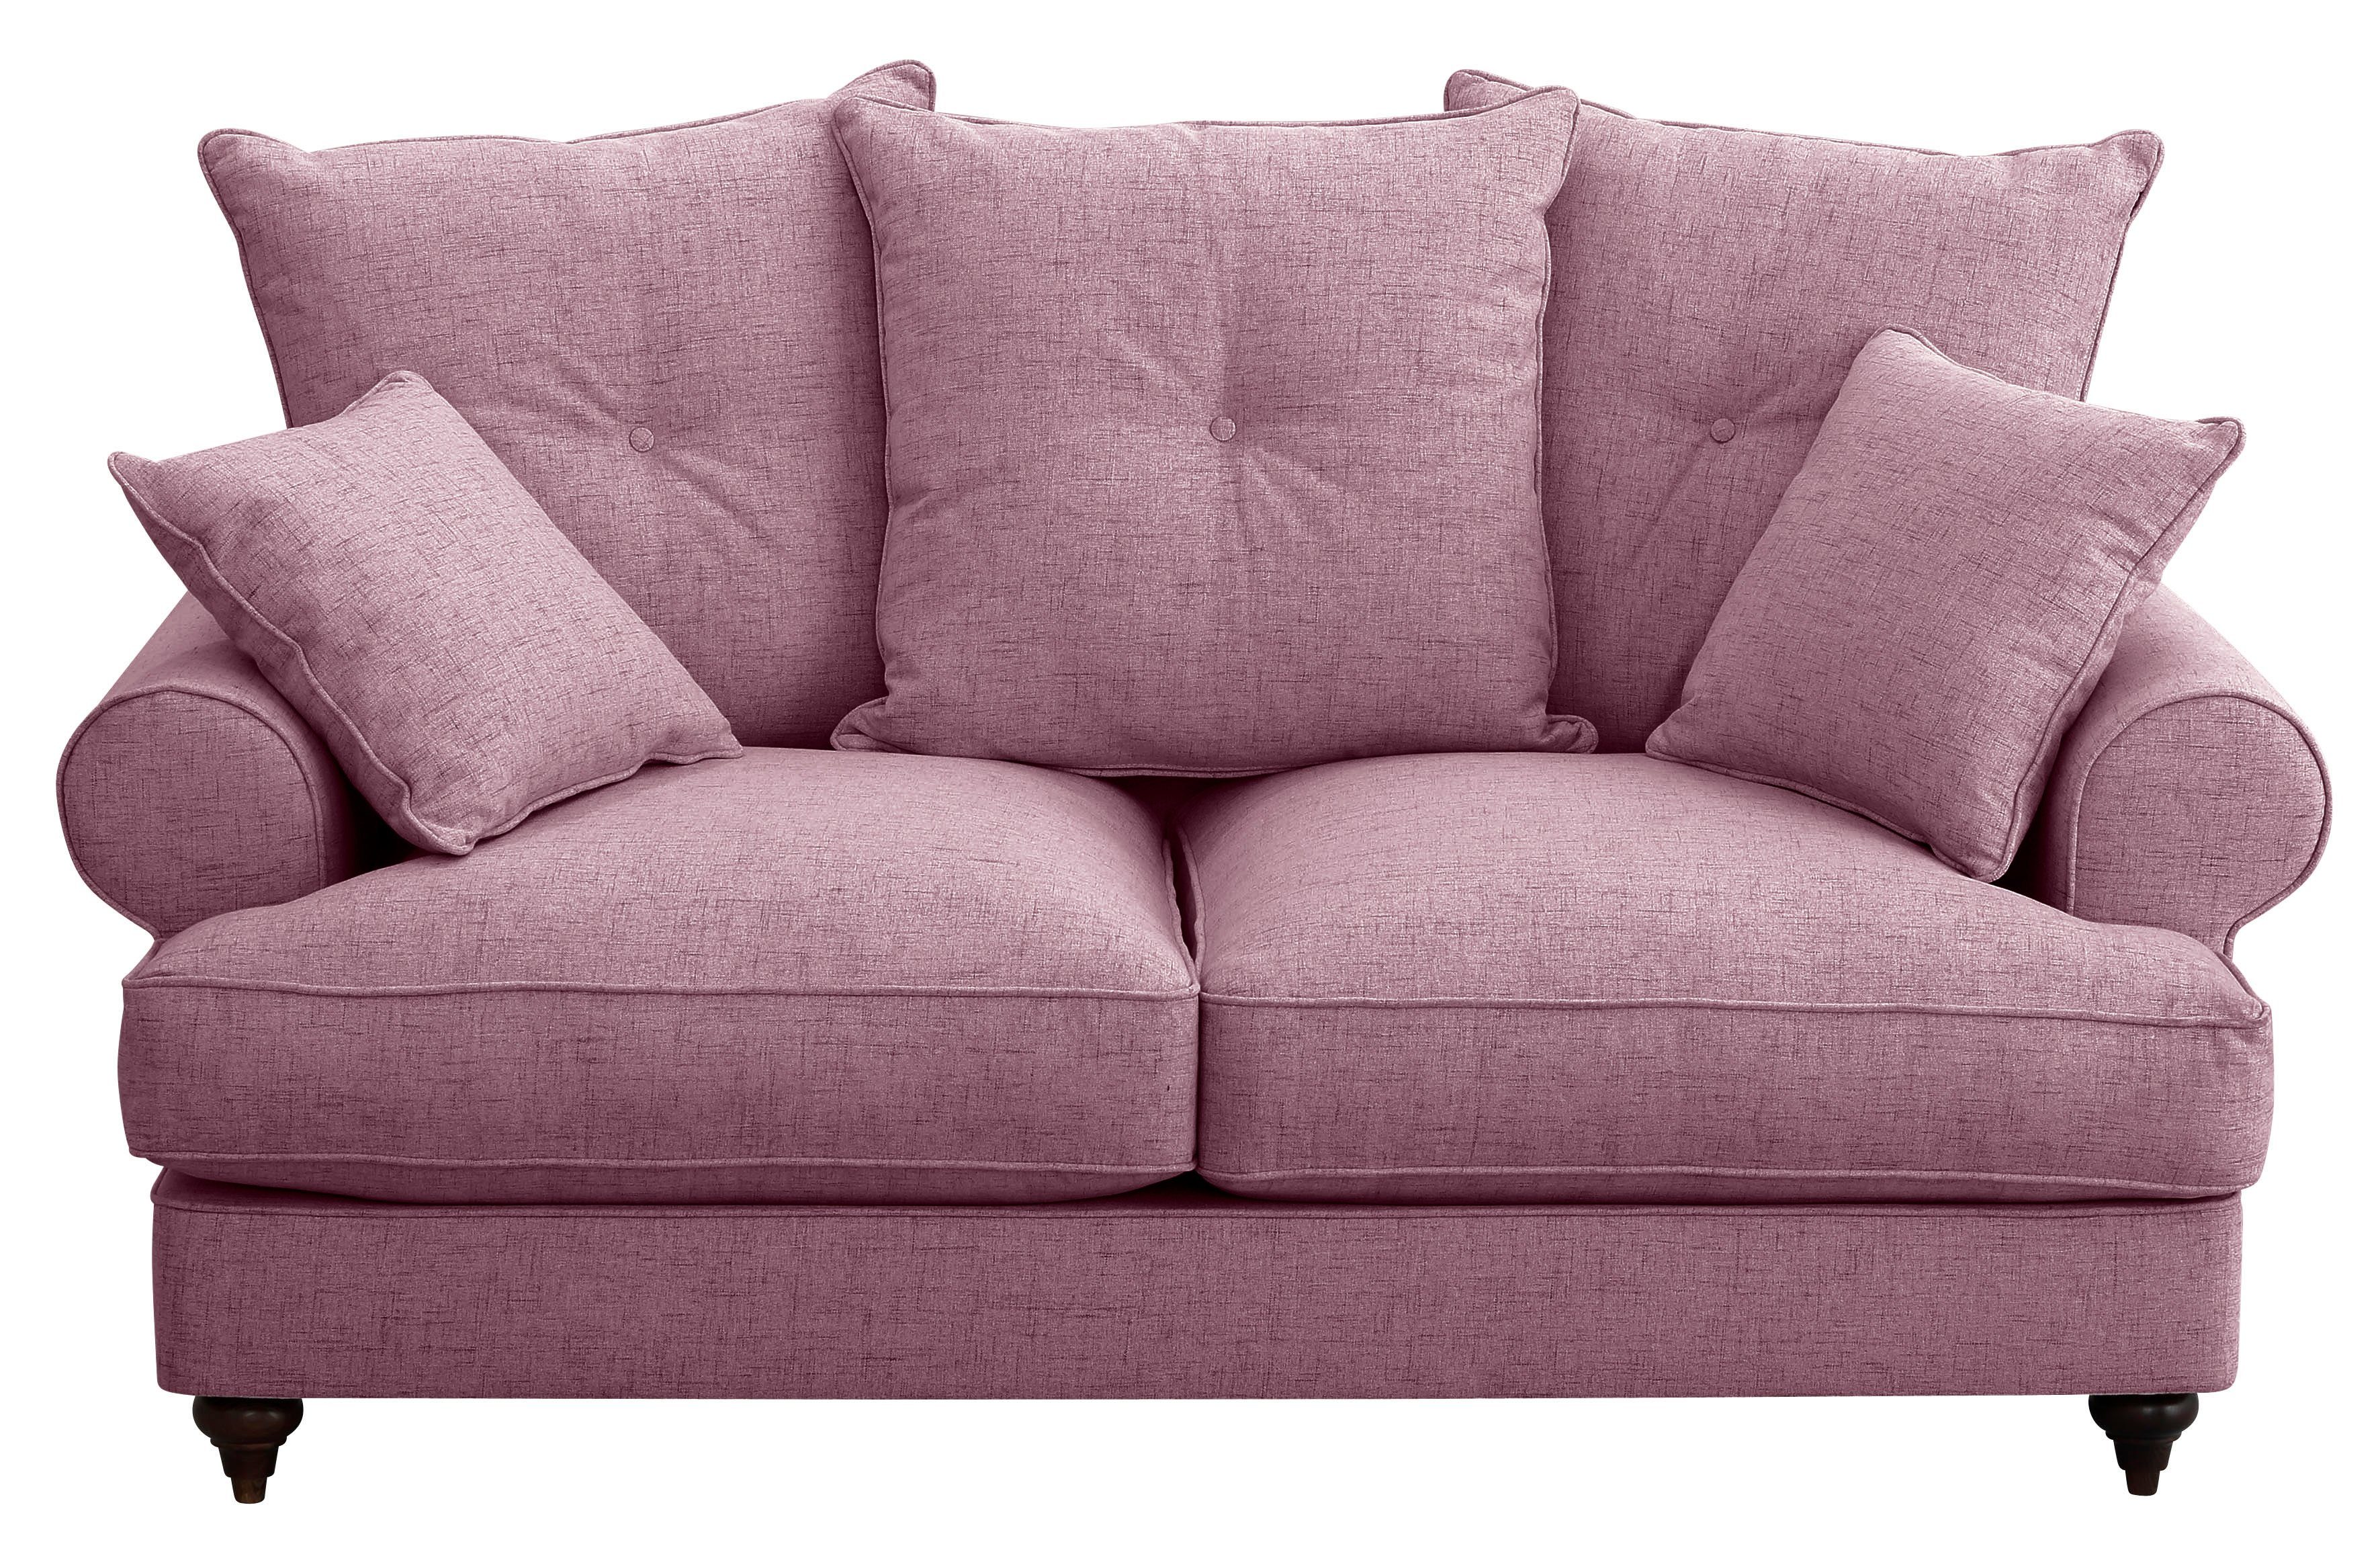 Home affaire 2-Sitzer verschiedenen Bloomer, violet mit hochwertigem Kaltschaum, in Farben erhältlich